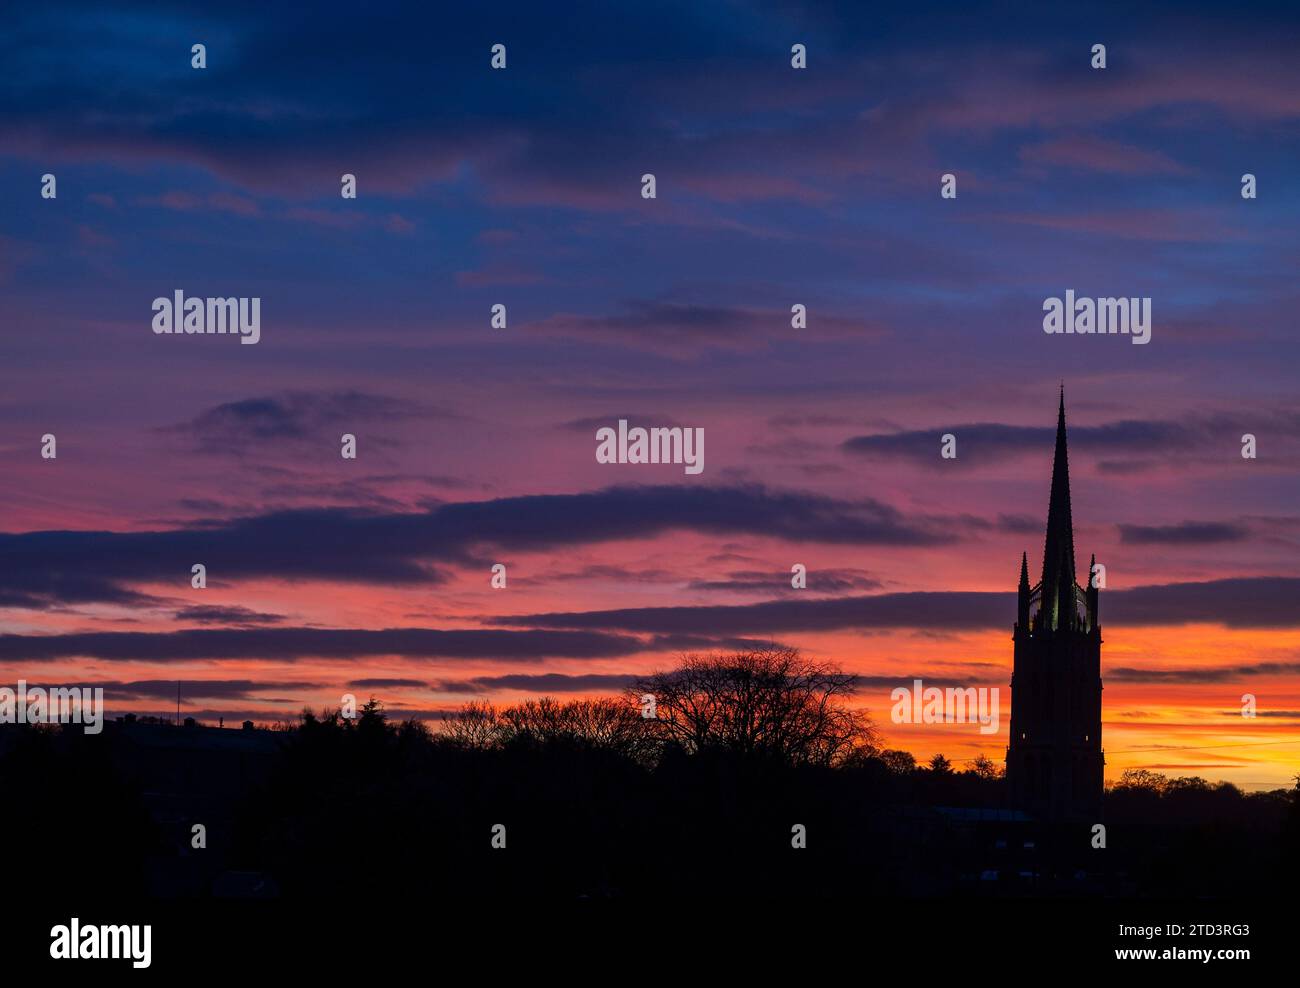 Dezember 2023 Louth, Lincolnshire, England. Ein dramatischer farbenfroher Sonnenuntergang hinter dem Turm der St. Jame’s Church in Louth, Lincolnshire. Hoch über der Landschaft der hübschen Marktstadt am Rande der Lincolnshire Wolds. Stellen Sie Sich Phil Wilkinson Vor Stockfoto